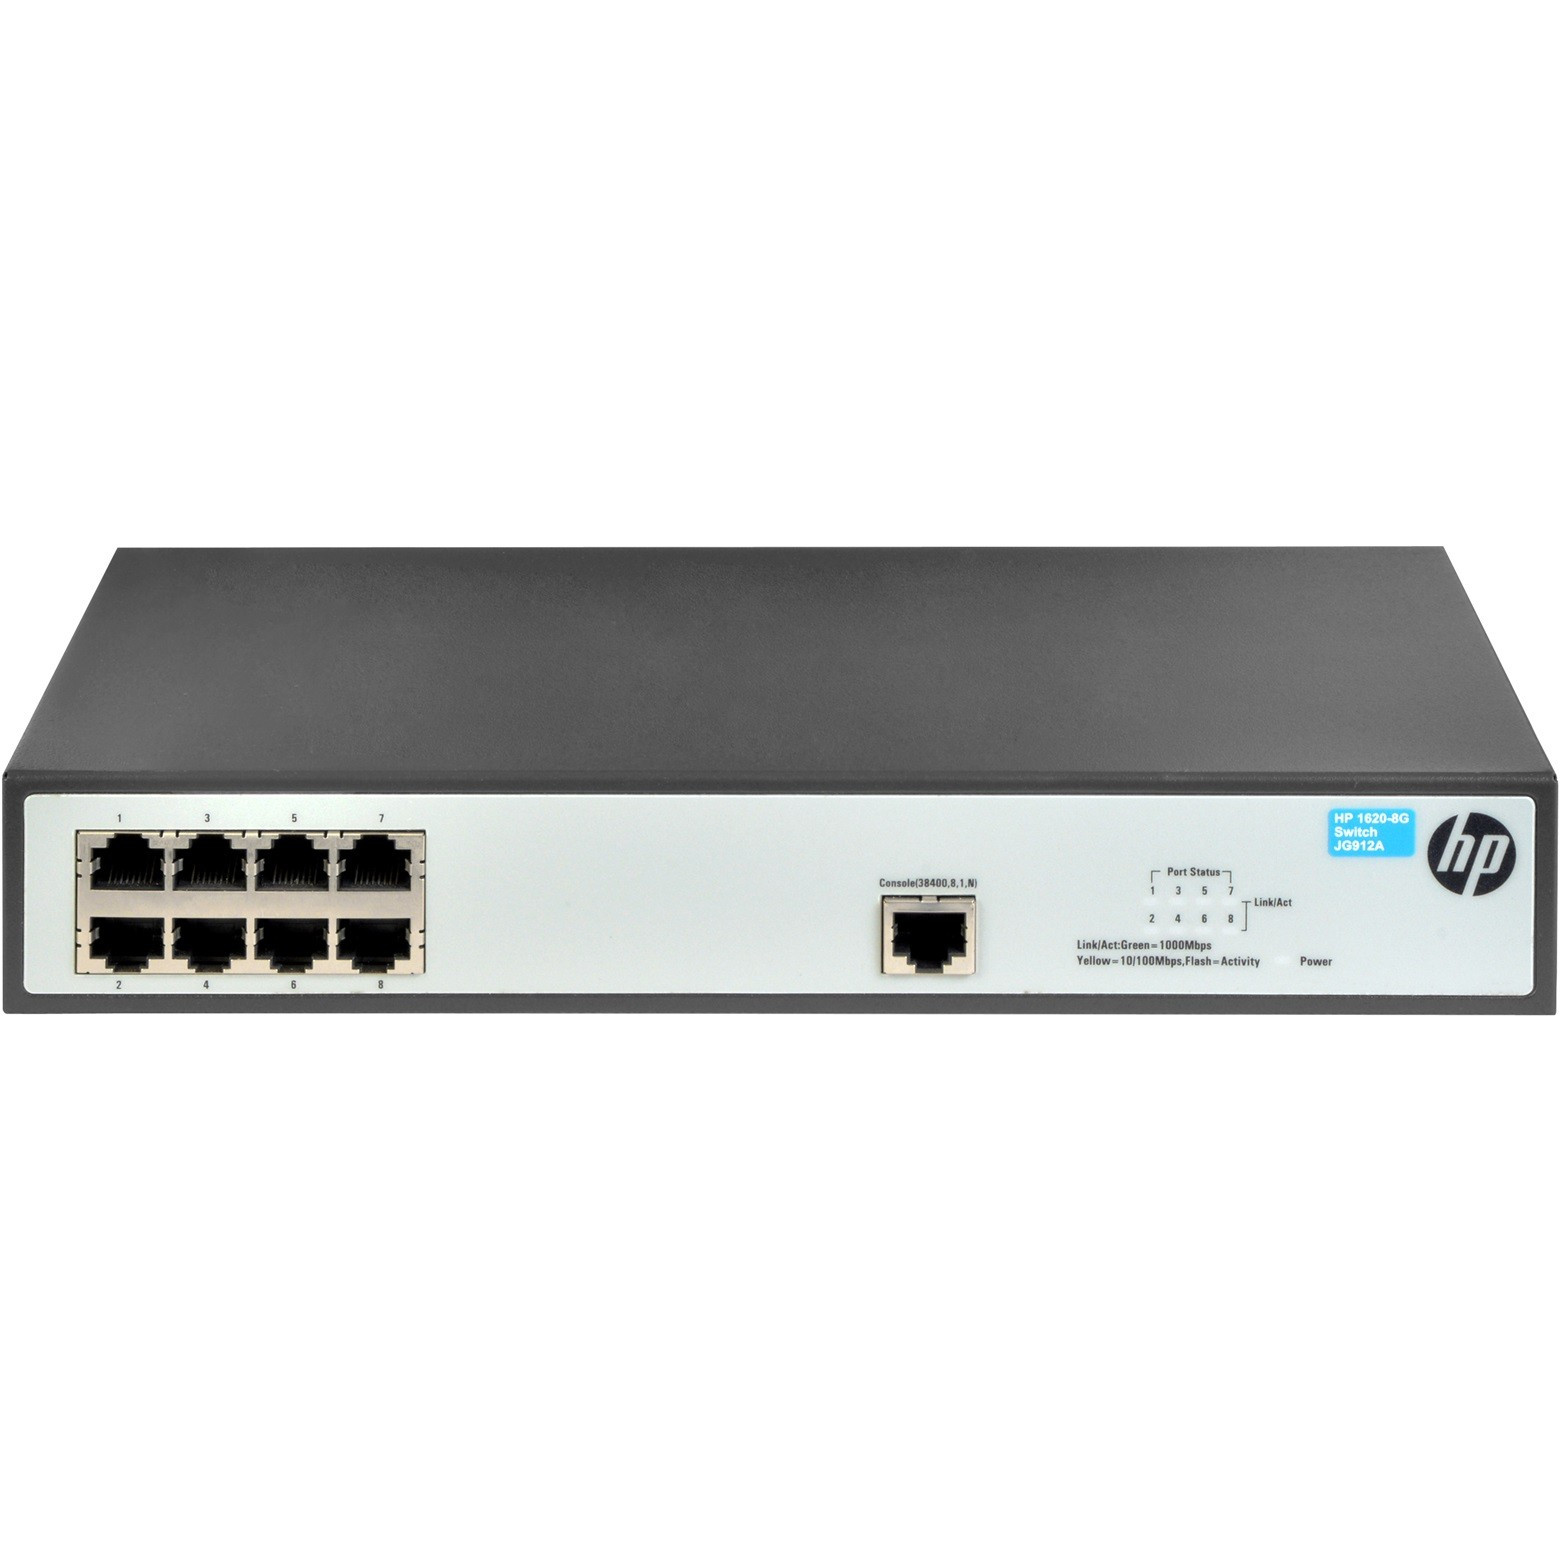  Switch HP 1620-8G 